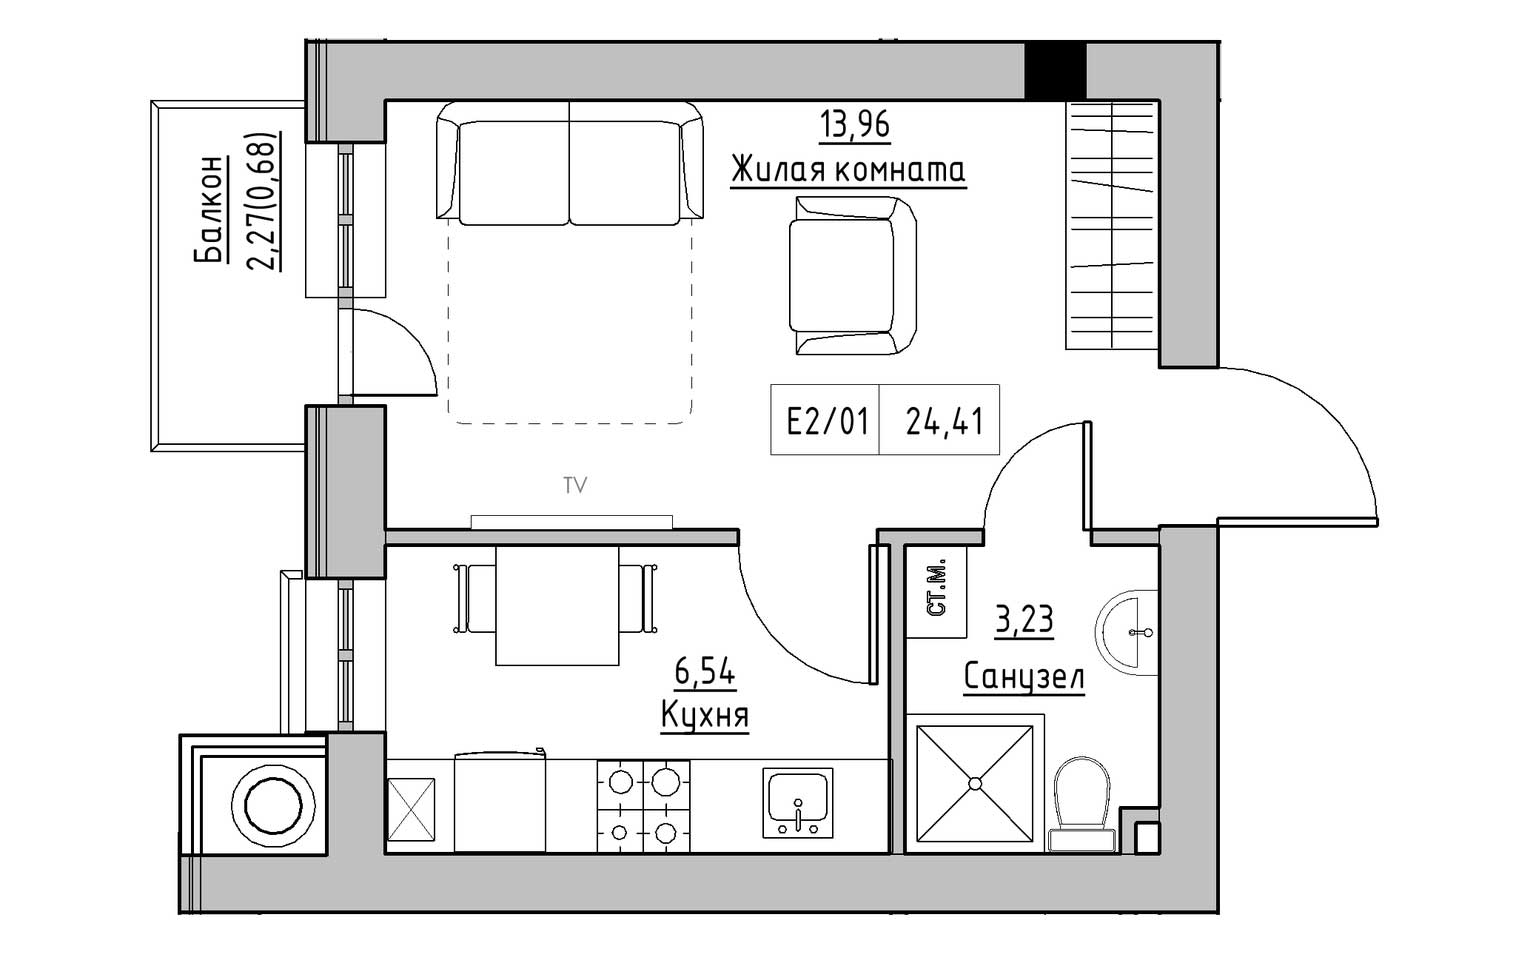 Планування 1-к квартира площею 24.41м2, KS-009-02/0005.